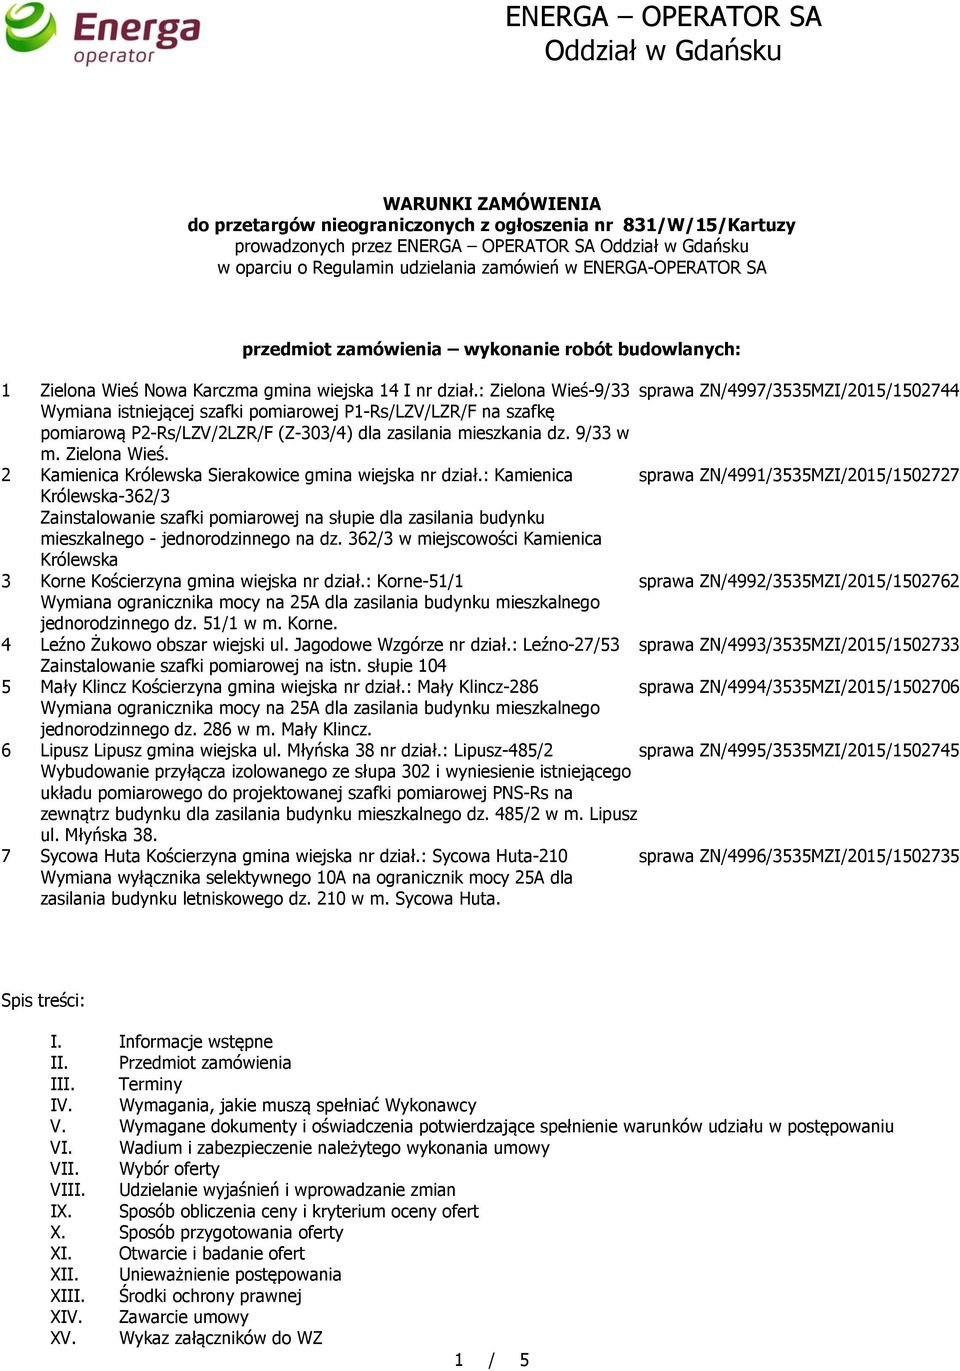 : Zielona Wieś-9/33 sprawa ZN/4997/3535MZI/2015/1502744 Wymiana istniejącej szafki pomiarowej P1-Rs/LZV/LZR/F na szafkę pomiarową P2-Rs/LZV/2LZR/F (Z-303/4) dla zasilania mieszkania dz. 9/33 w m.